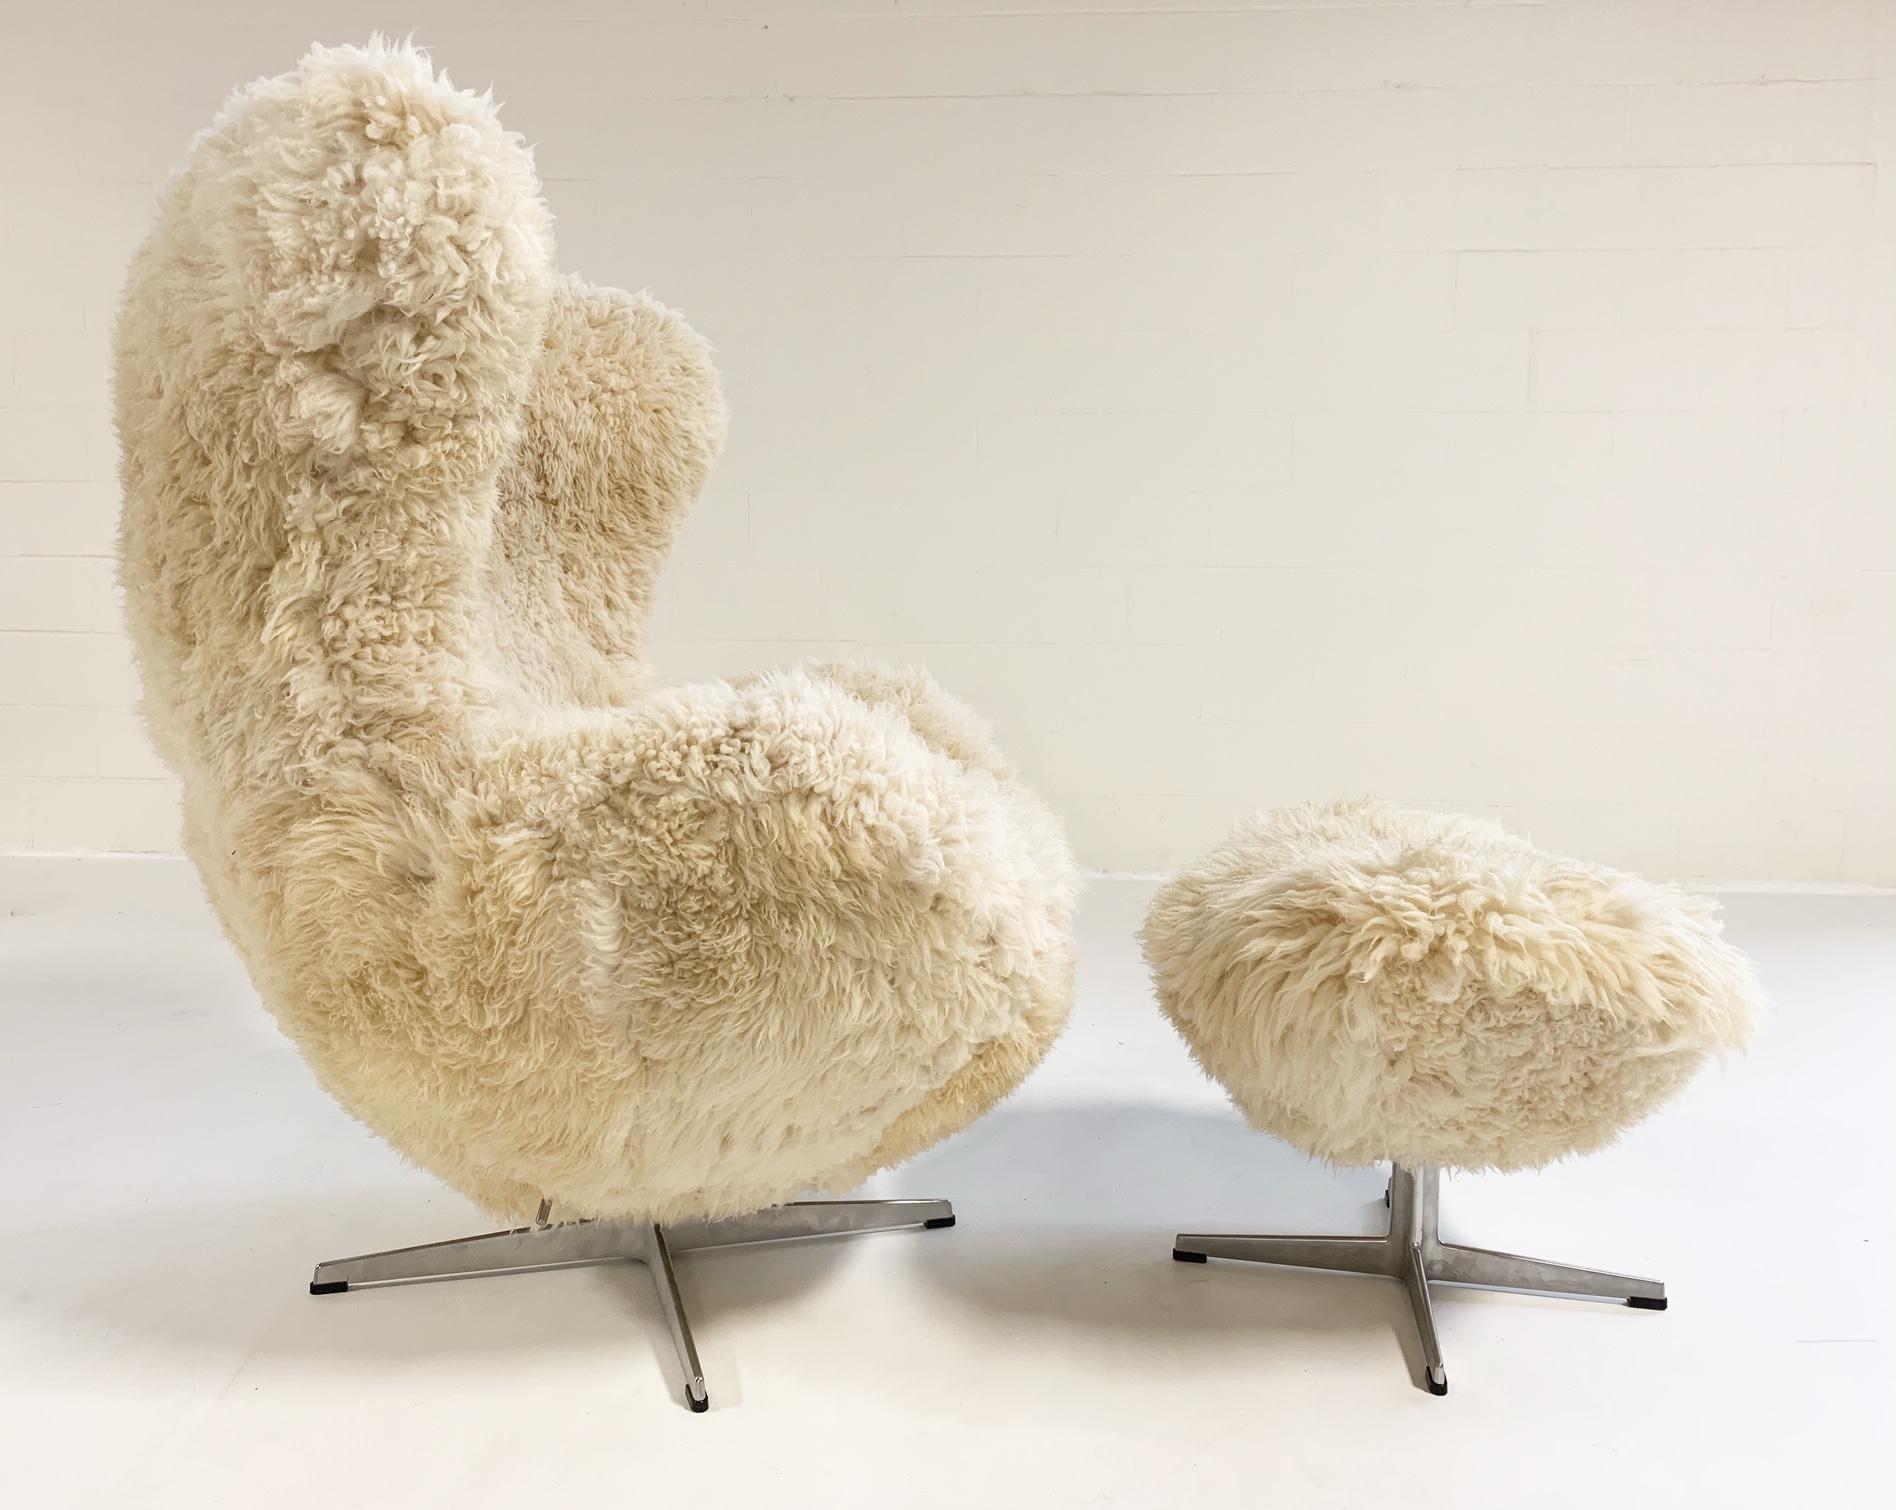 Danish Arne Jacobsen for Fritz Hansen Egg Chair & Ottoman in California Sheepskin